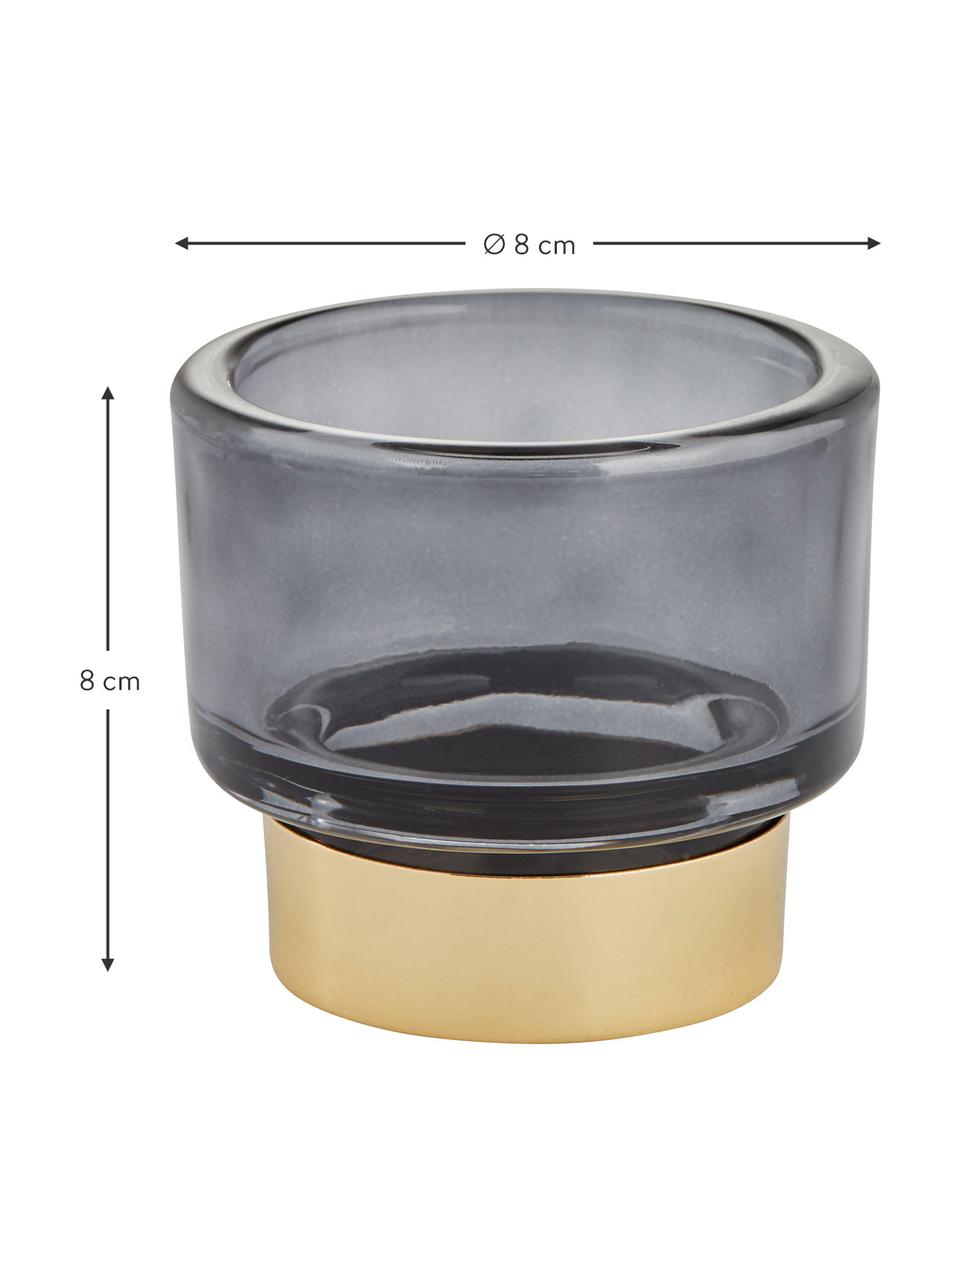 Handgefertigter Teelichthalter Miy in Dunkelgrau, Glas, Dunkelgrau, transparent, Goldfarben, Ø 8 cm